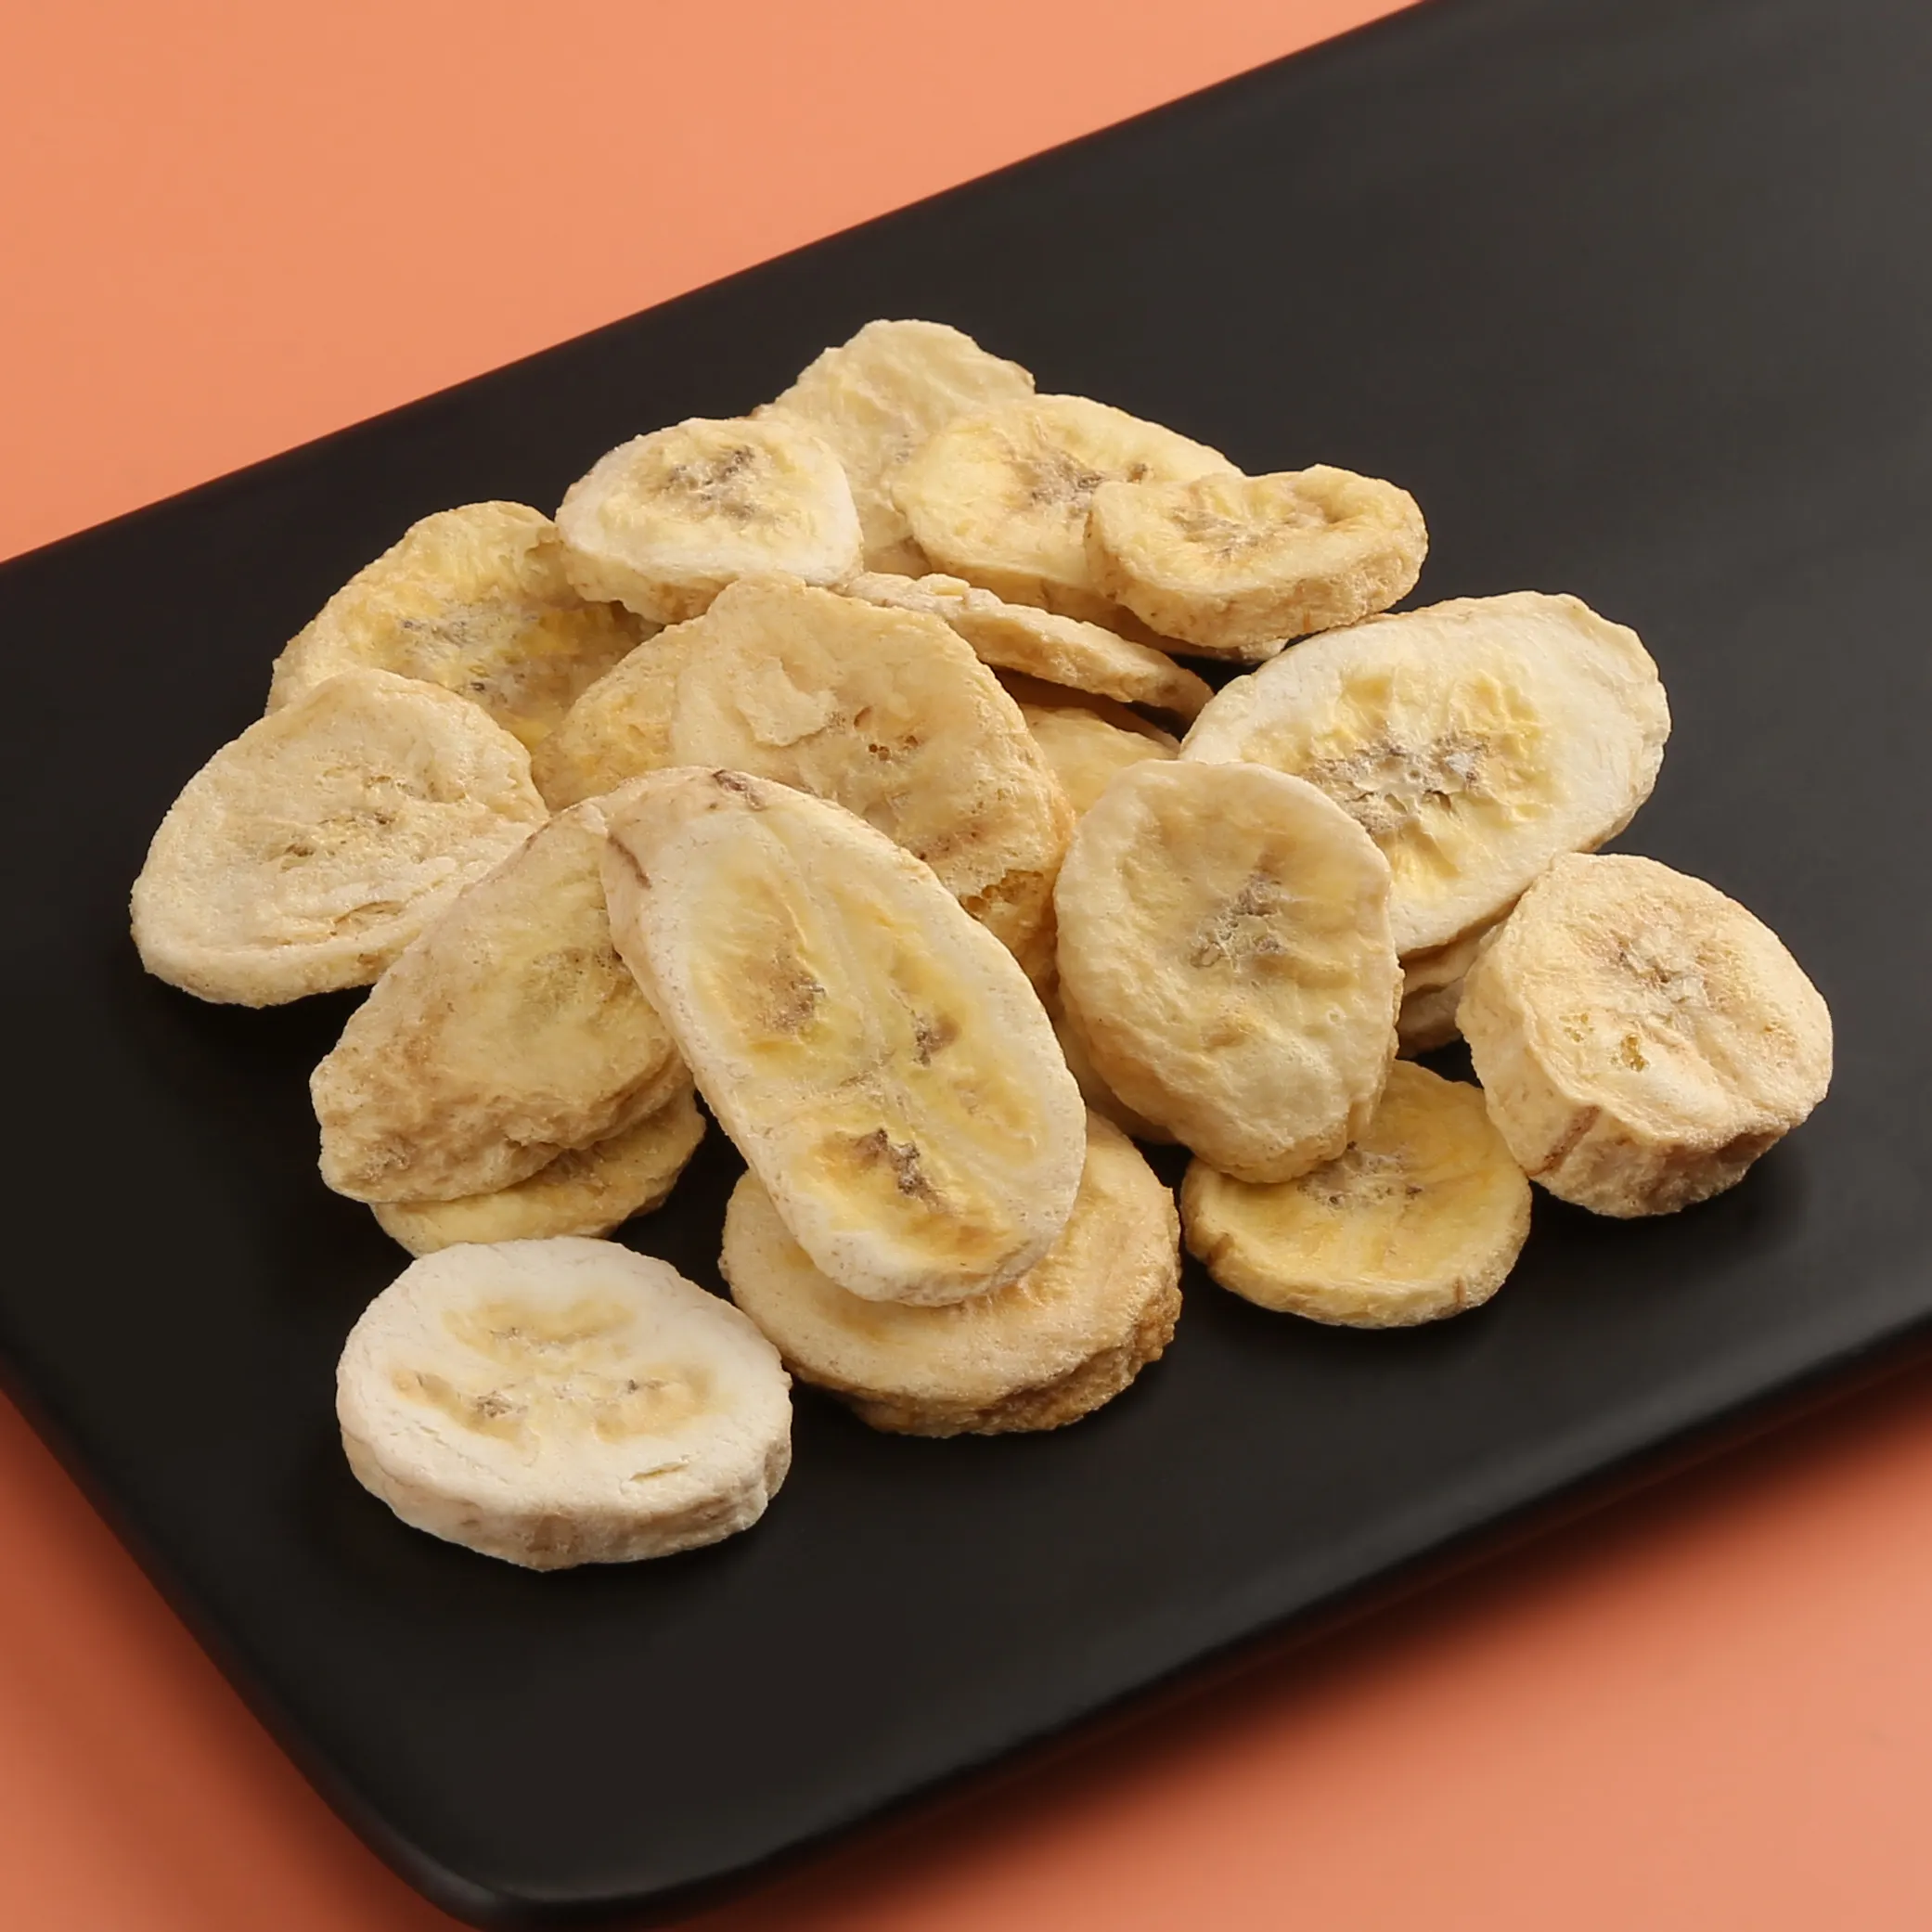 Guoyue Alta Qualidade Sublimated Banana Dice Liofilizado Frutas Em Pó Sublimação Ingredientes Congelar Fatia De Banana Seca